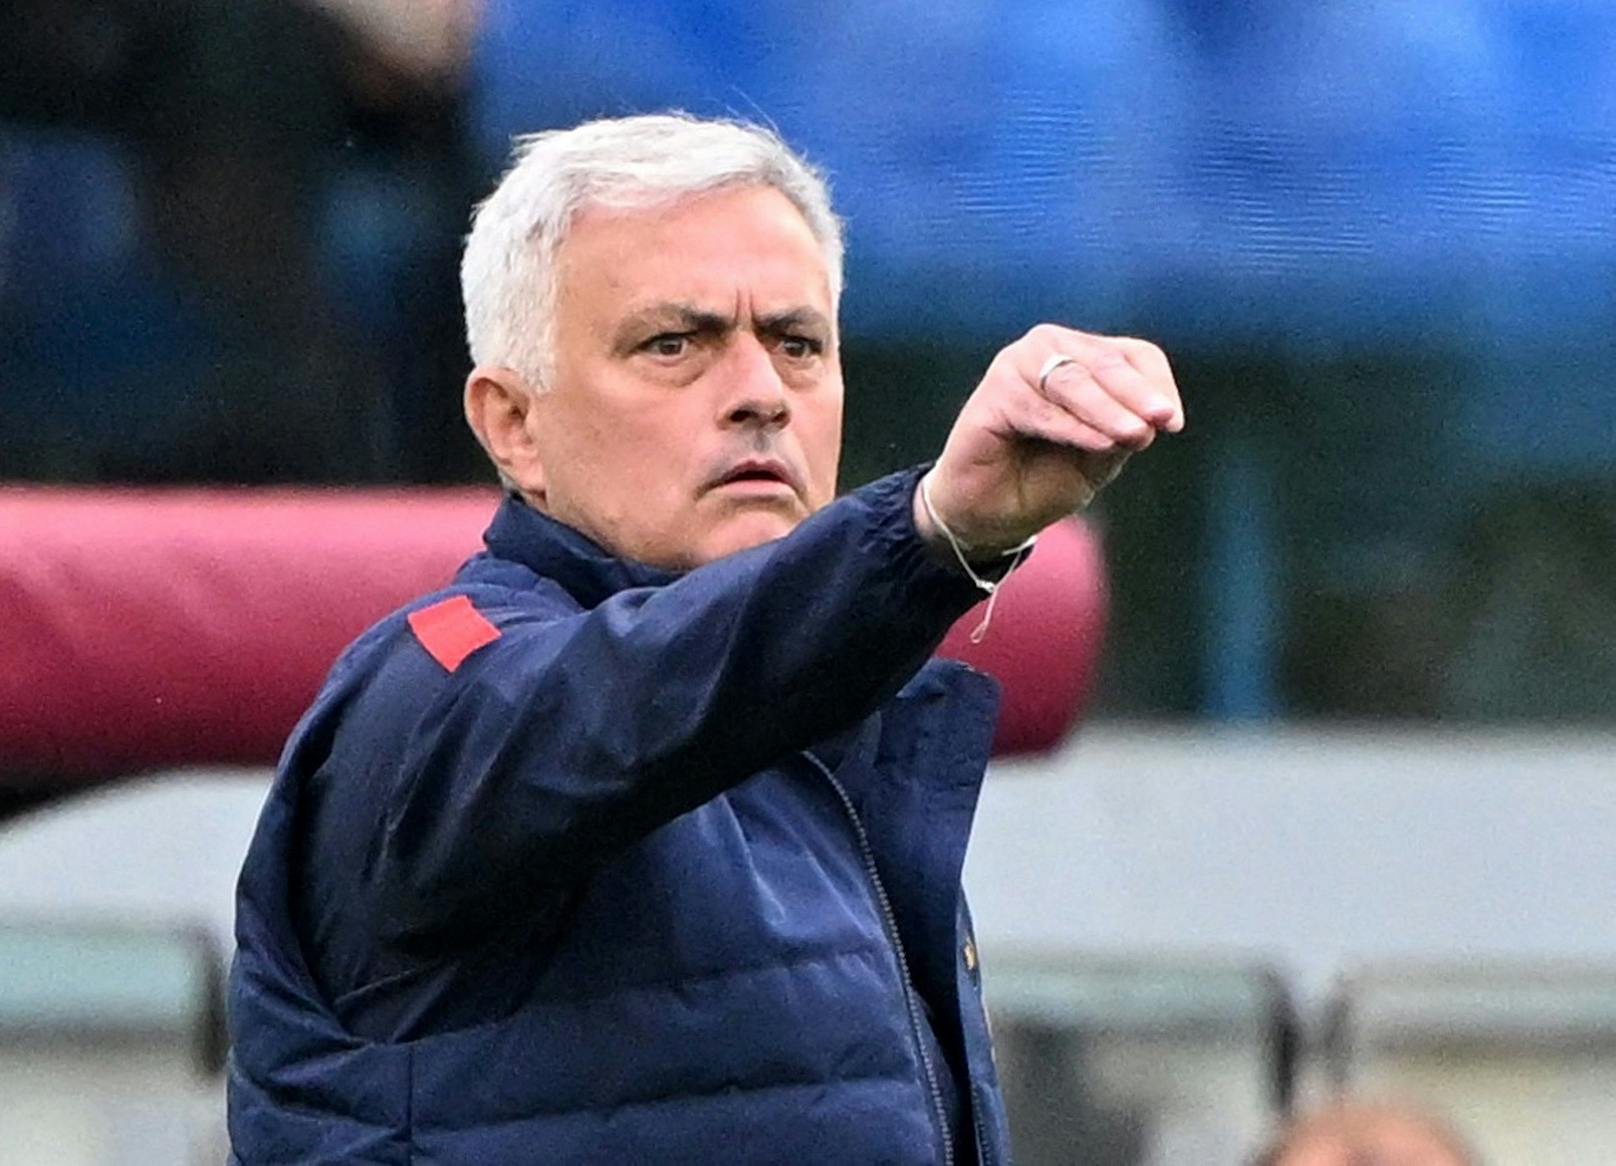 Der portugiesische Star-Trainer Jose Mourinho ist mit einer kuriosen Aktion aufgefallen. 